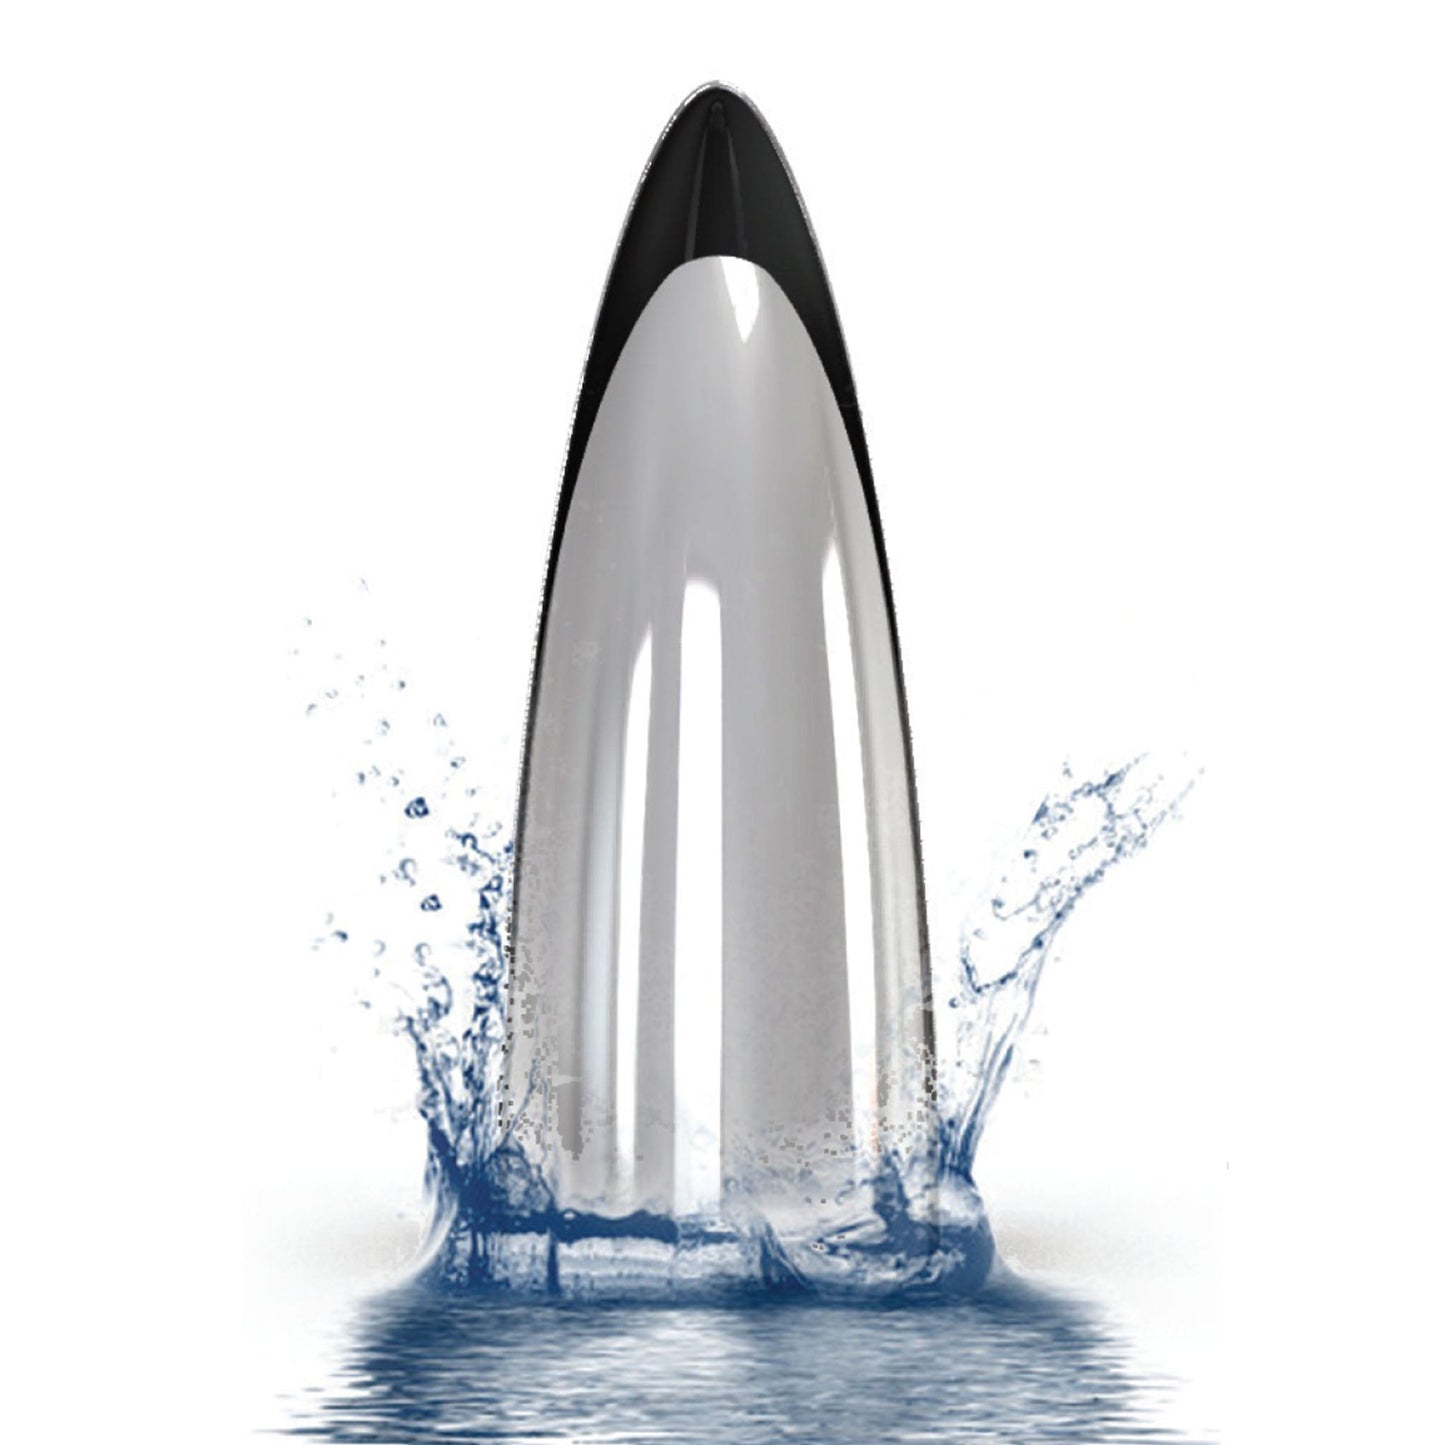 Vagnbys® 'Shark' Bottle Opener by Ethan+Ashe